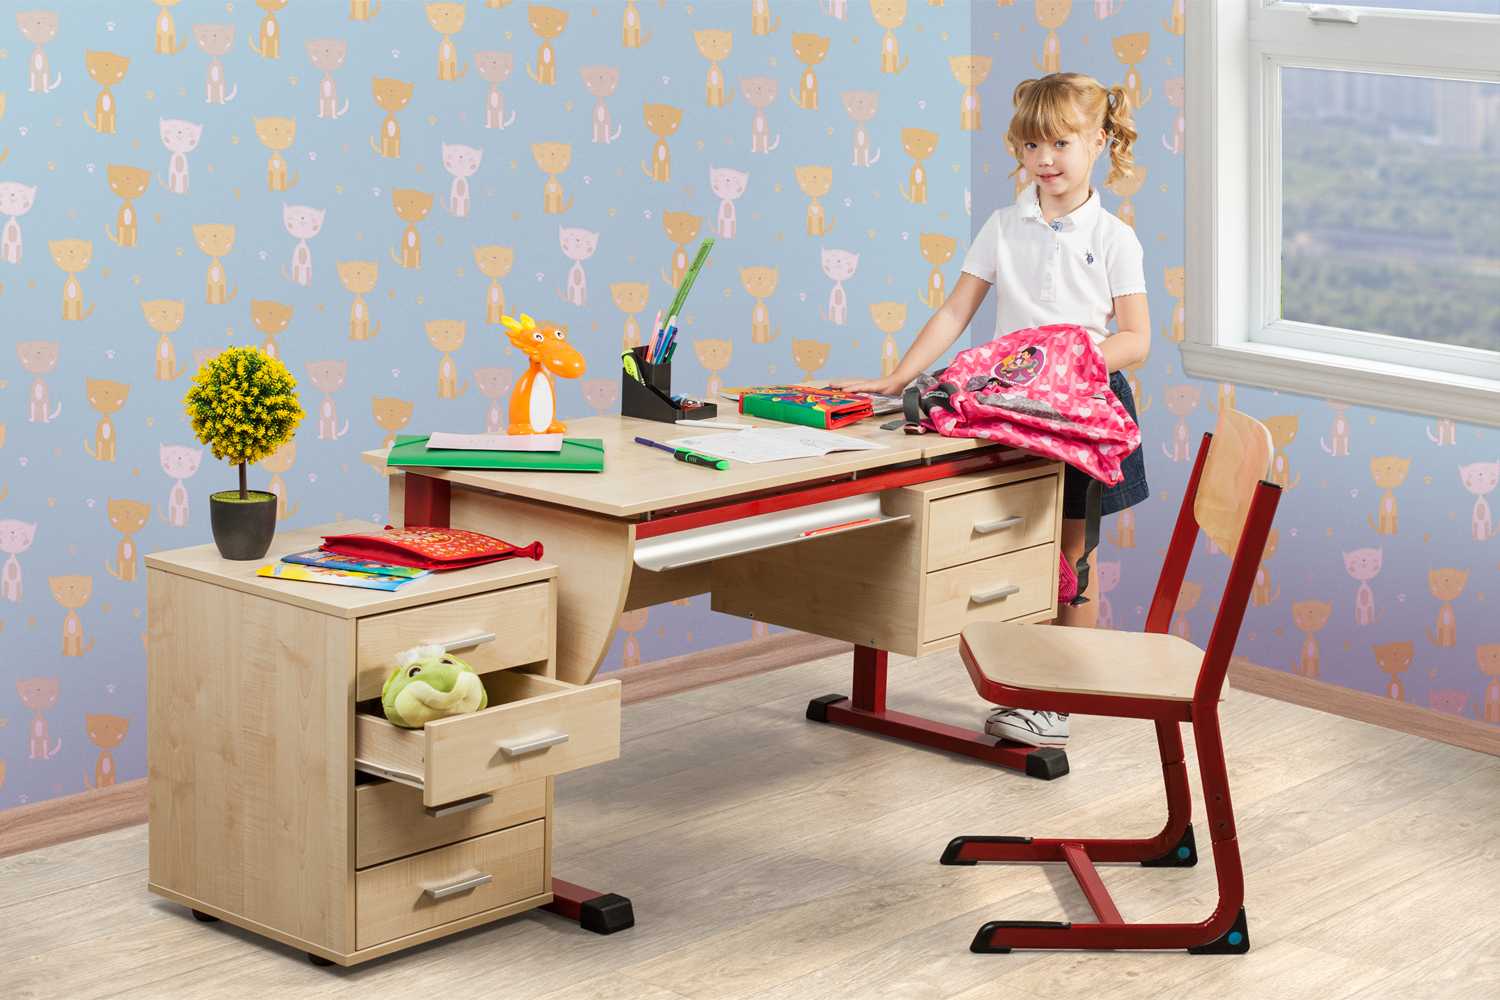 Компьютерная мебель для детей